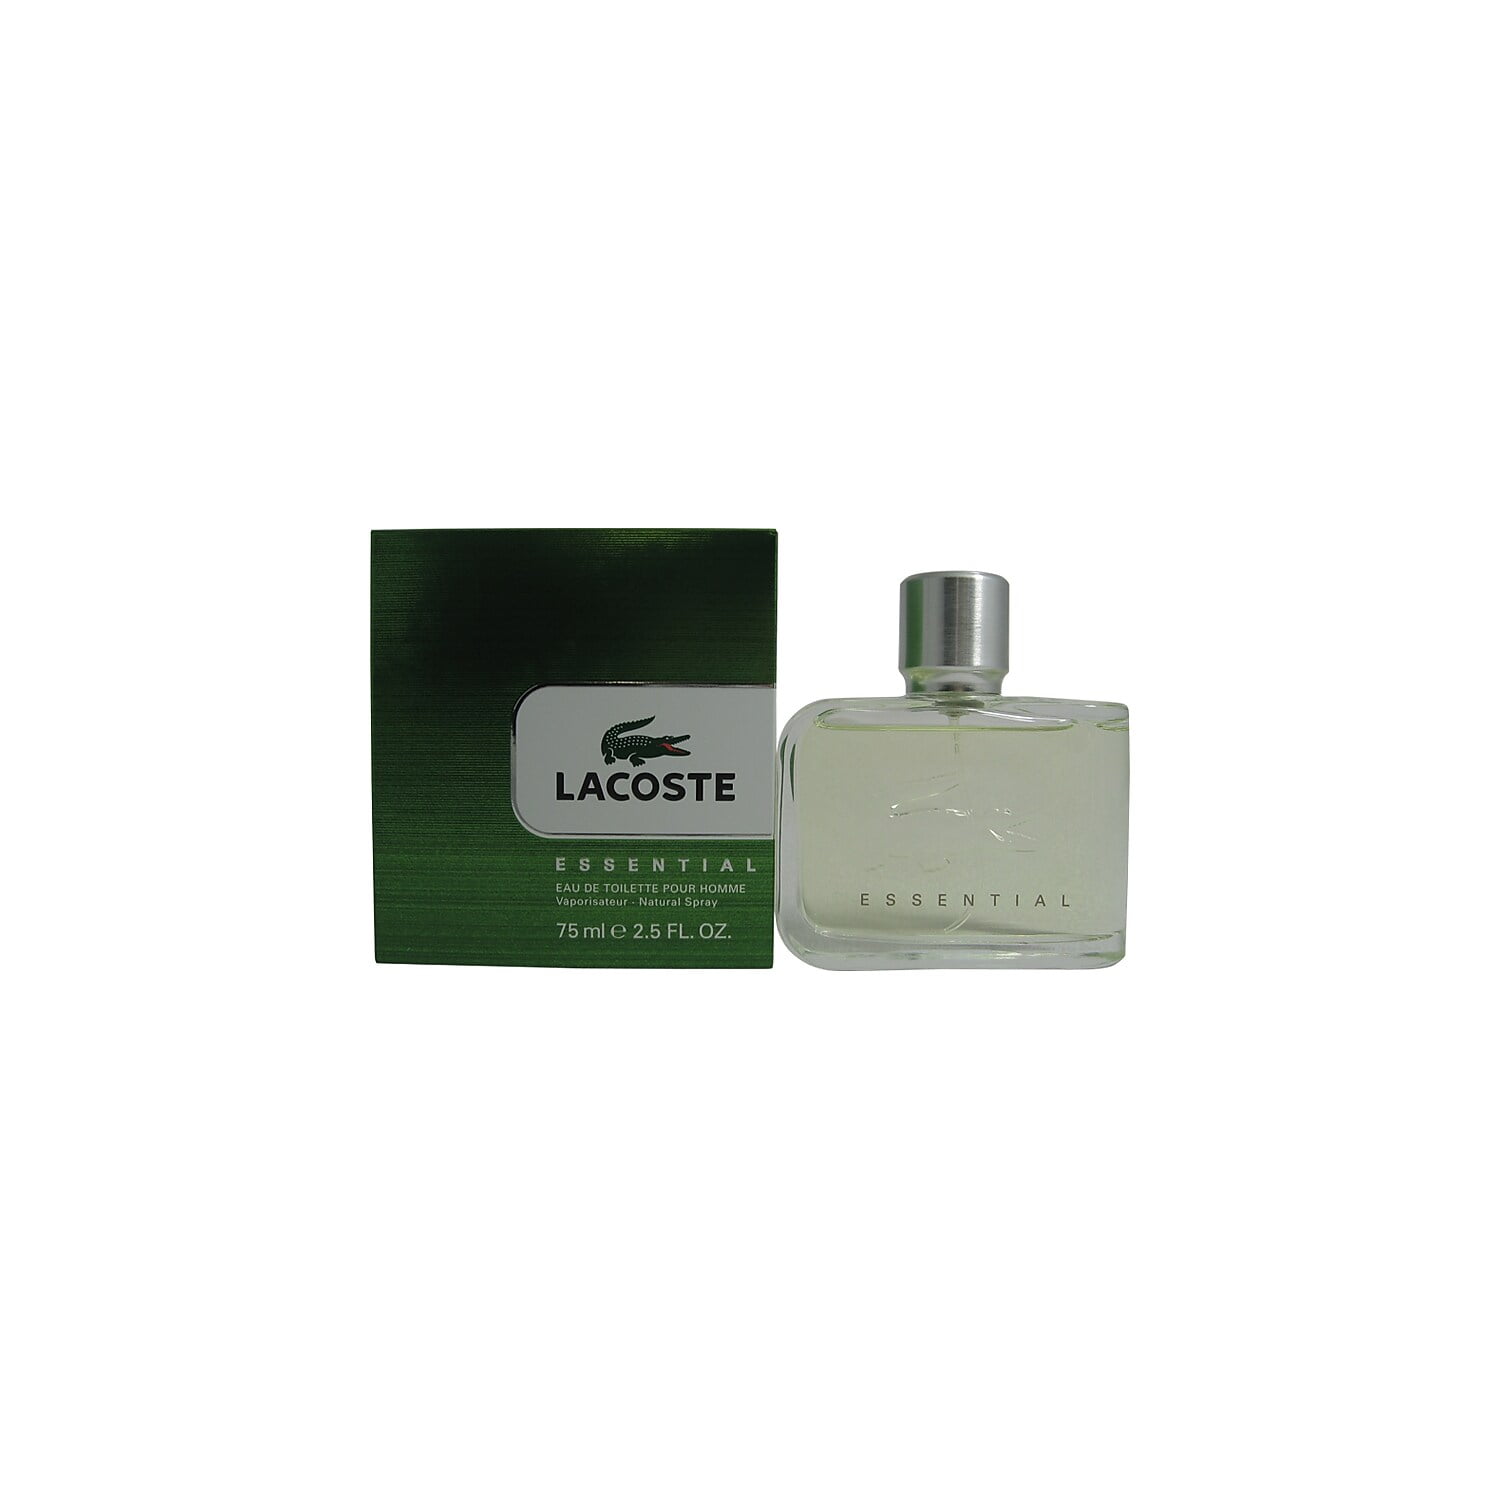 Lacoste Essential By Lacoste For Men Eau De Toilette Spray 2.5 Oz / 75 Ml - Walmart.com